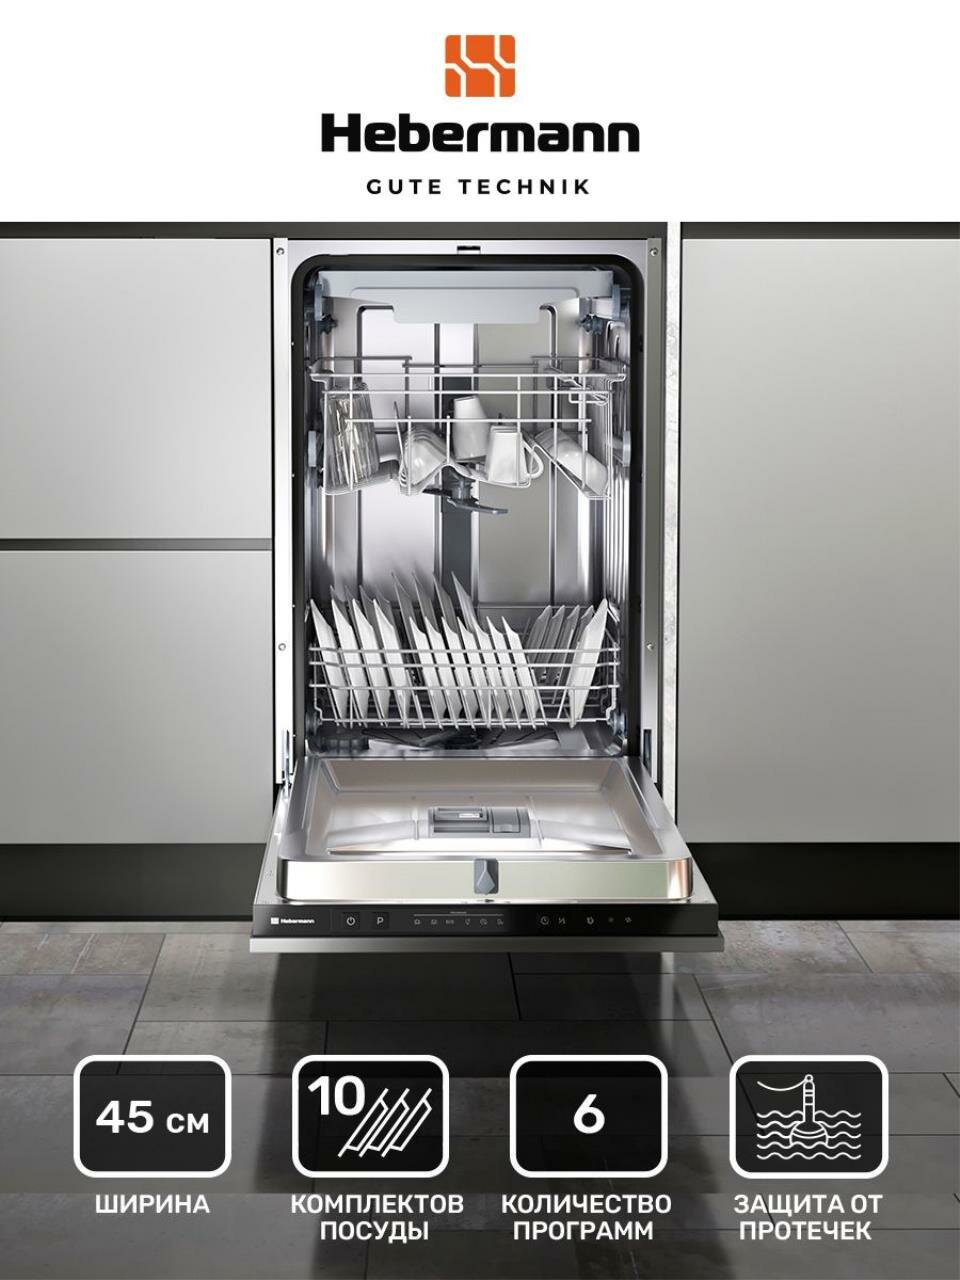 Посудомоечная машина встраиваемая HBSI 4536.1 45см 6 (интенсивный нормальный экономный стекло 90 минут быстрый) Система защиты от протечек-AquaBlock отложенный стар 3 корзины.